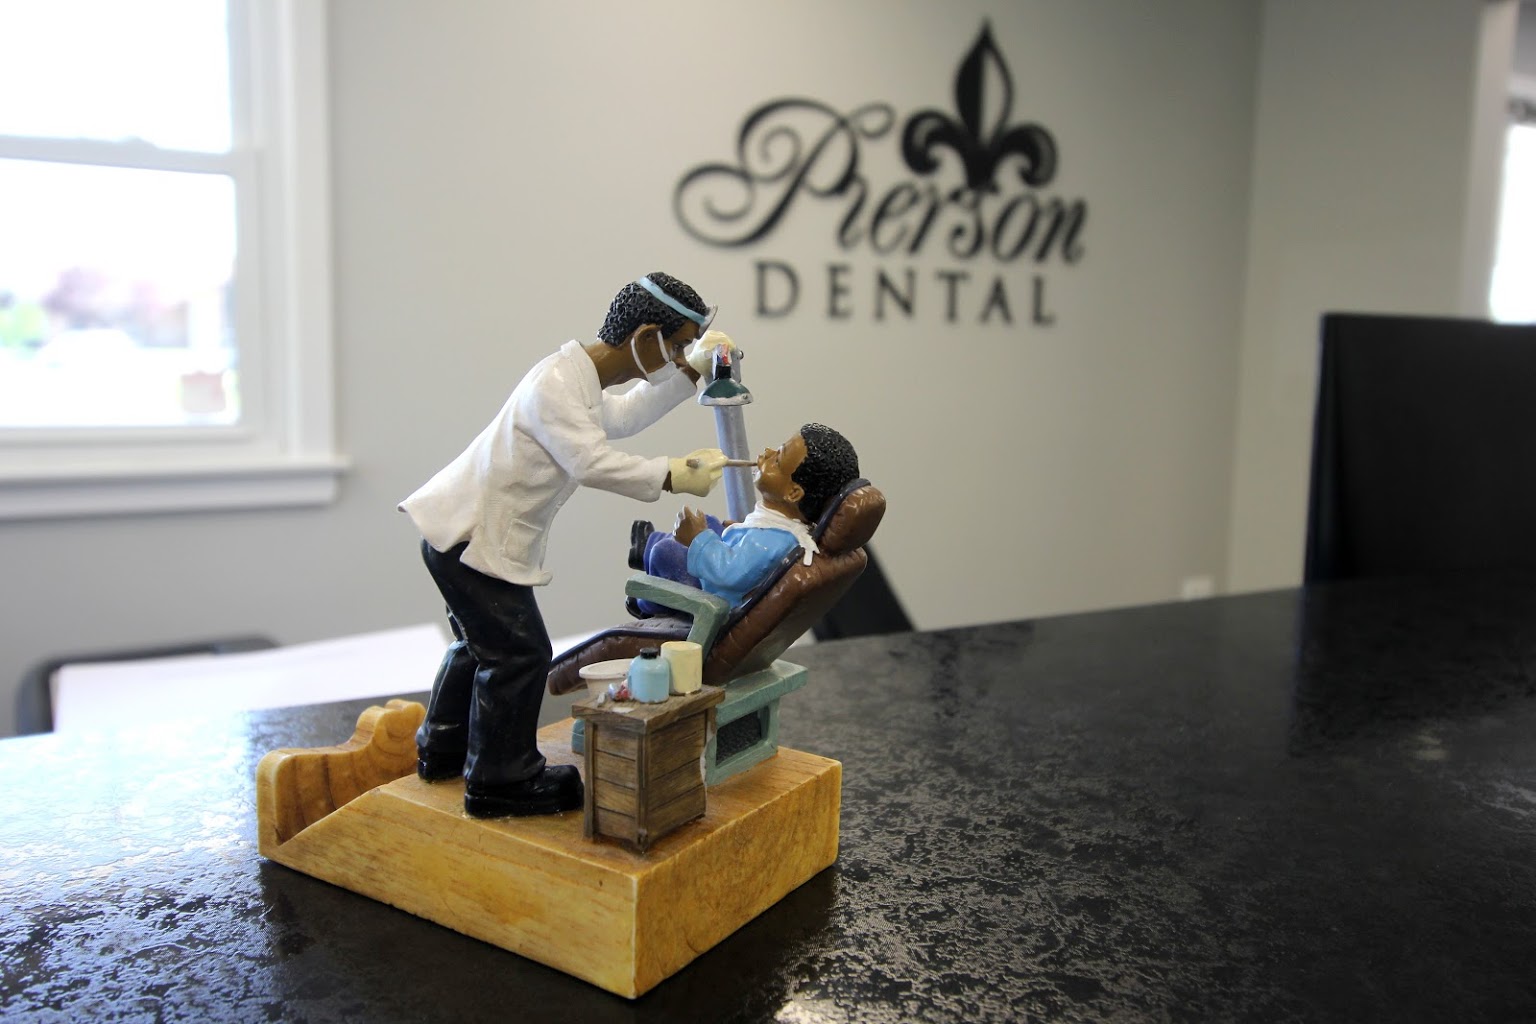 Pierson Dental Office in Sicklerville, NJ dentist figurine